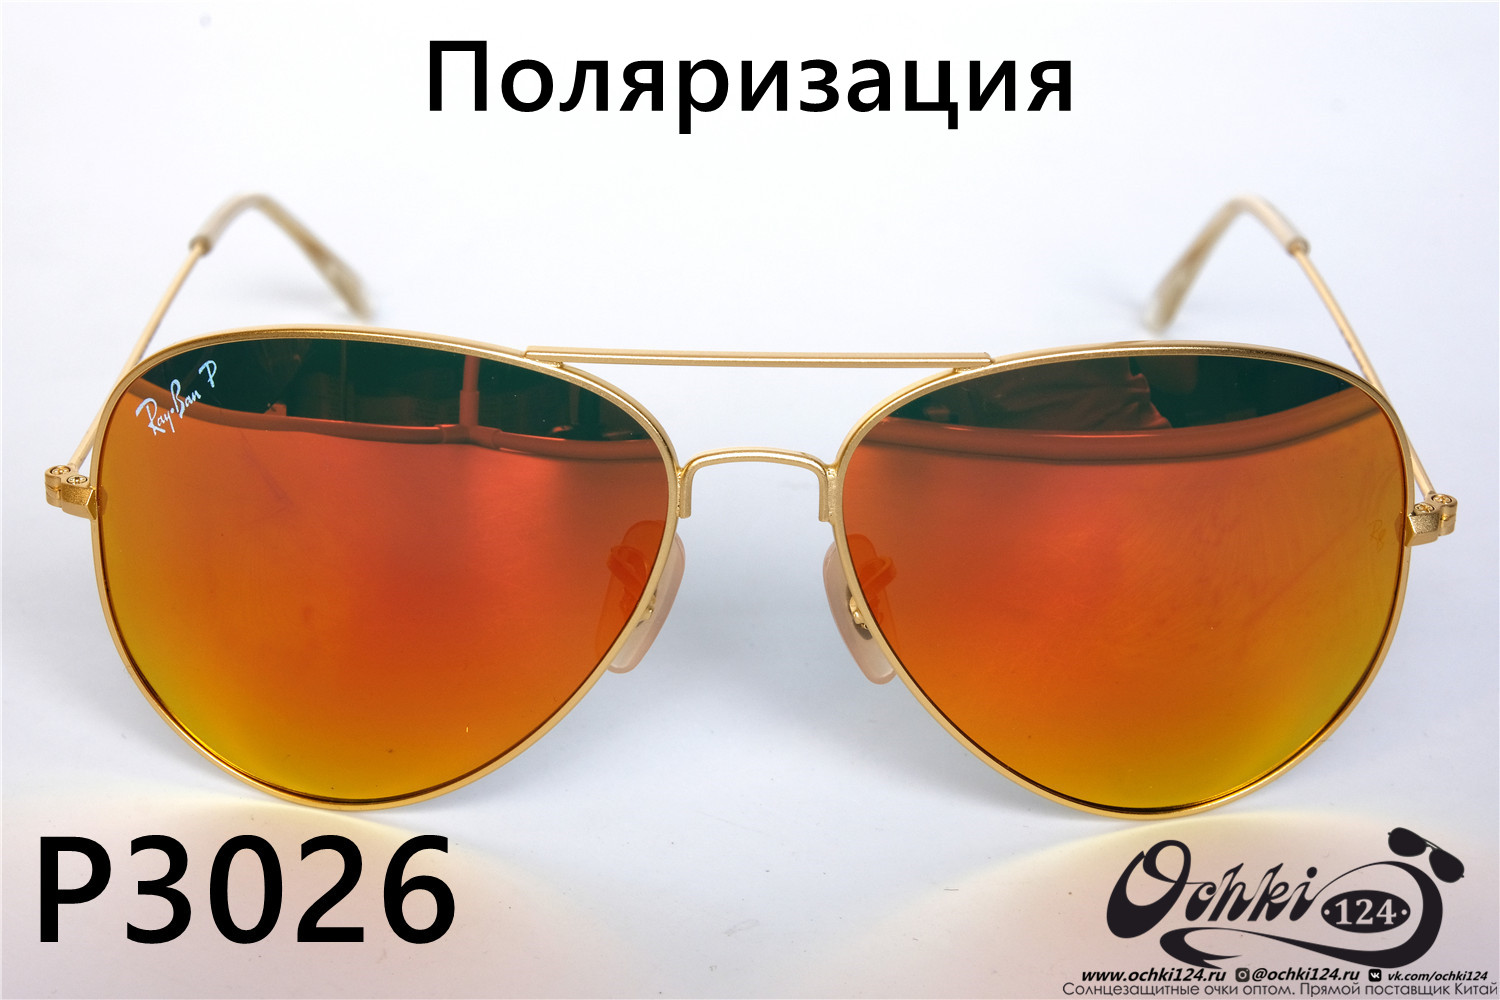  Солнцезащитные очки картинка 2022 Унисекс Поляризованные Авиаторы Rote Sonne P3026-26 